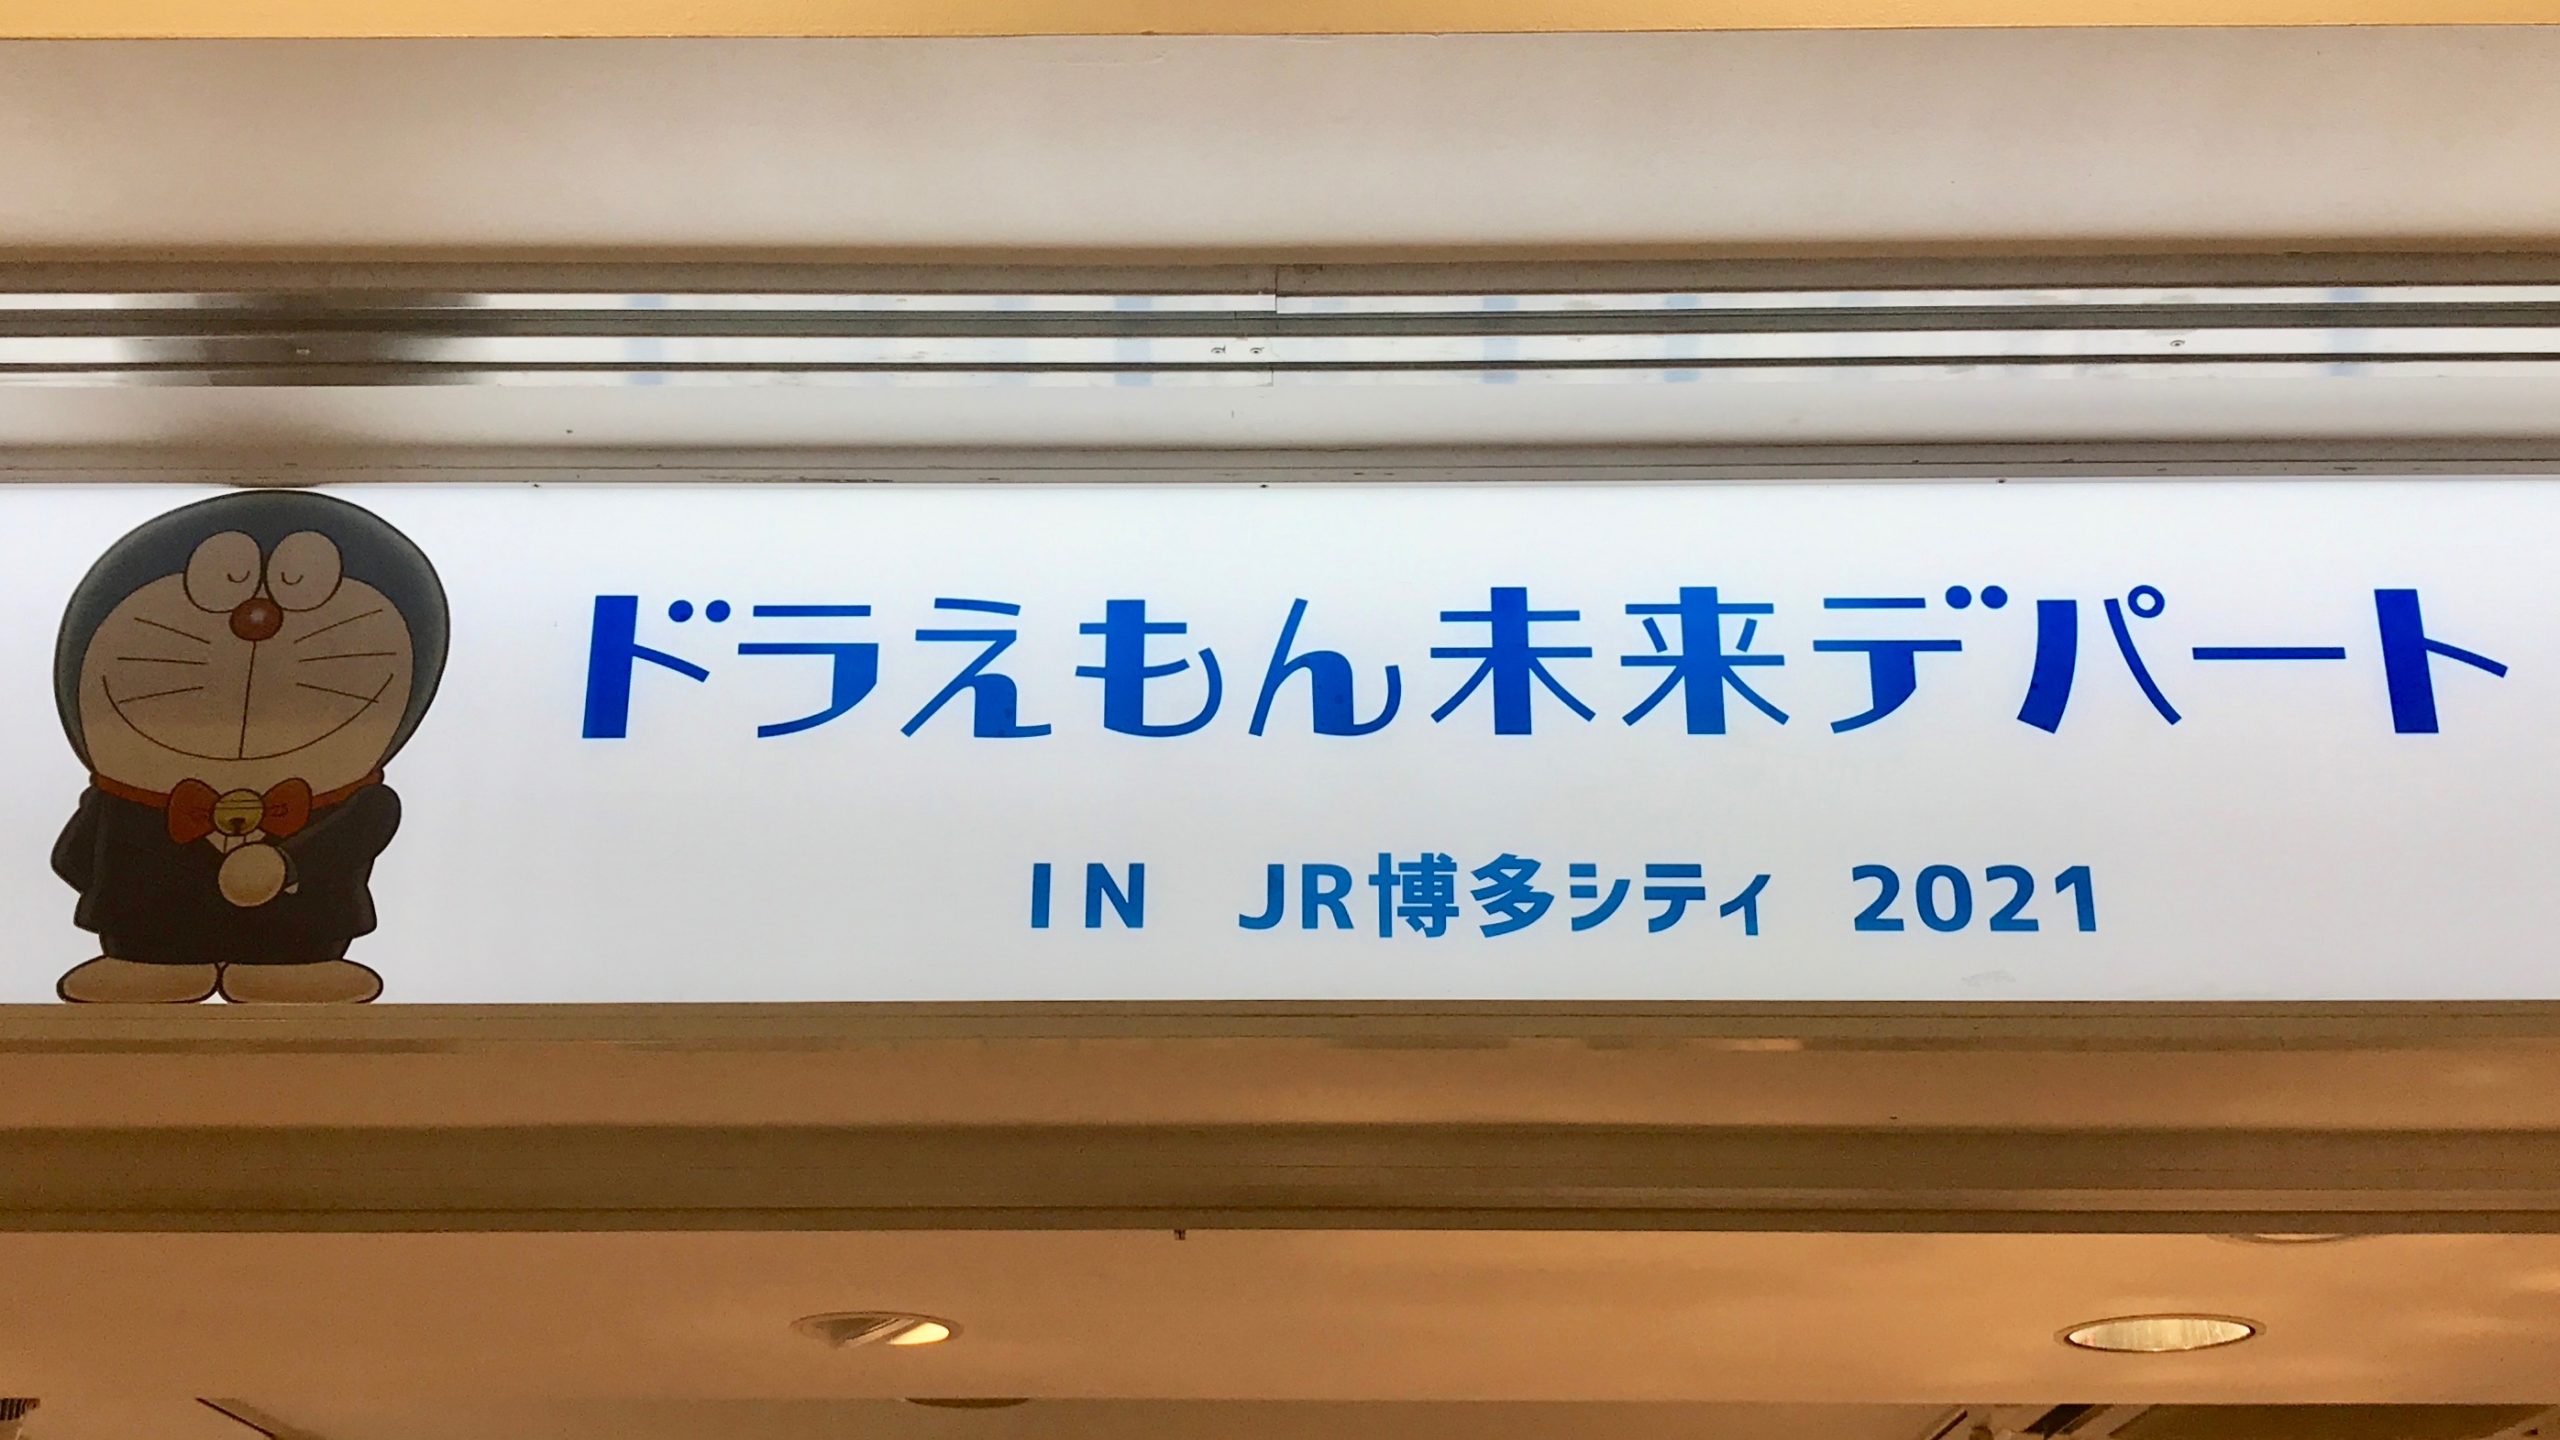 2021年2月18日(木)～3月7日(日)の期間、福岡市のJR博多駅に隣接している、JR博多シティ内 AMU EST 1F POPUP STAGEで『ドラえもん未来デパート IN JR博多シティ 2021』が開催されます。